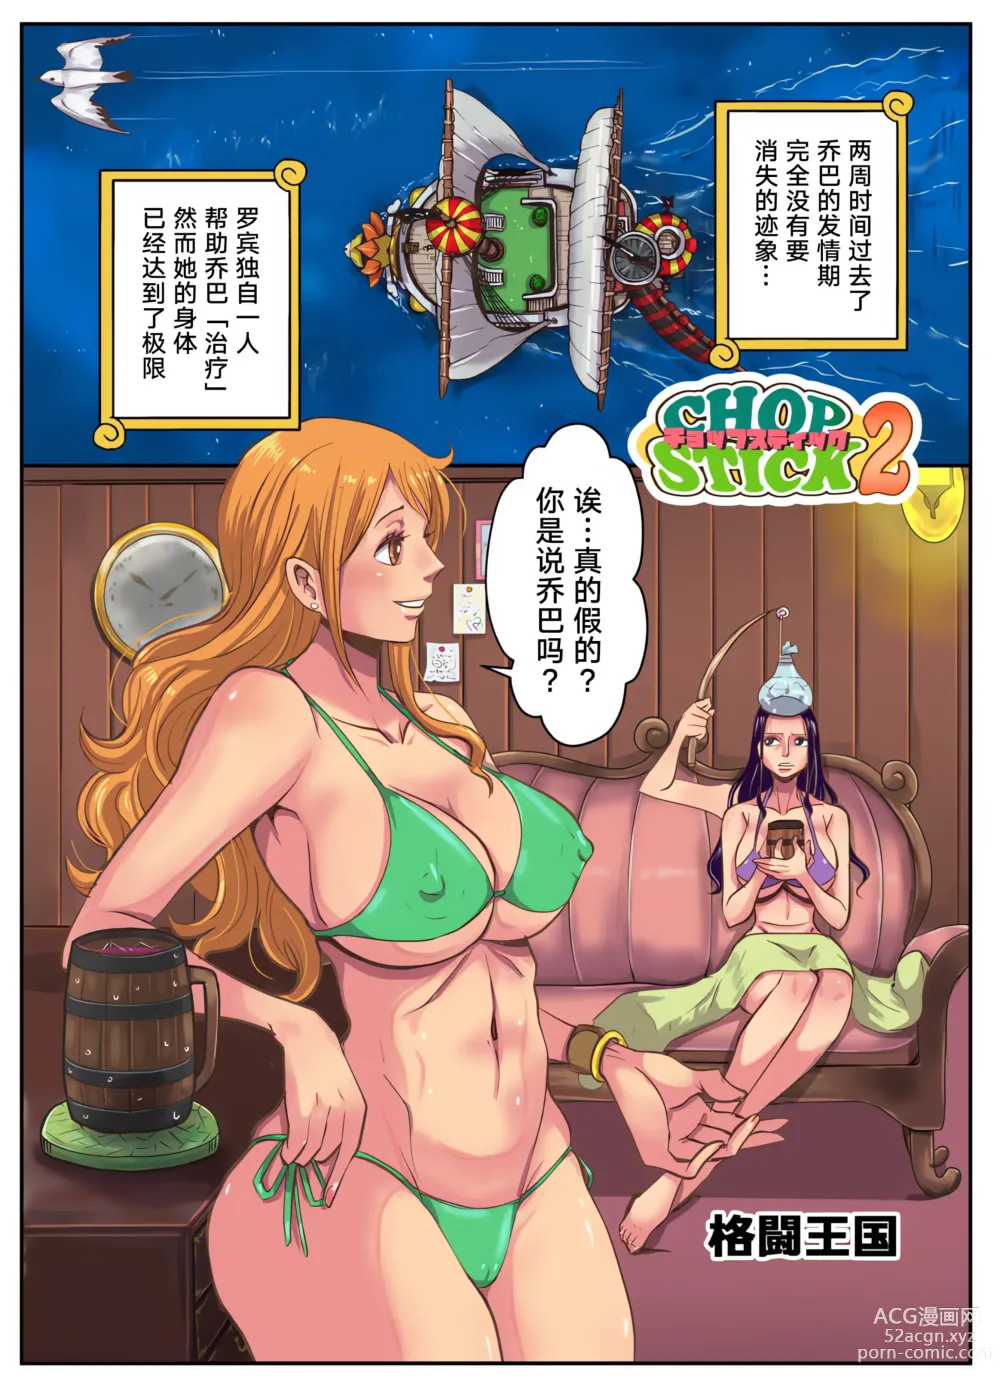 Page 4 of doujinshi CHOP STICK 2